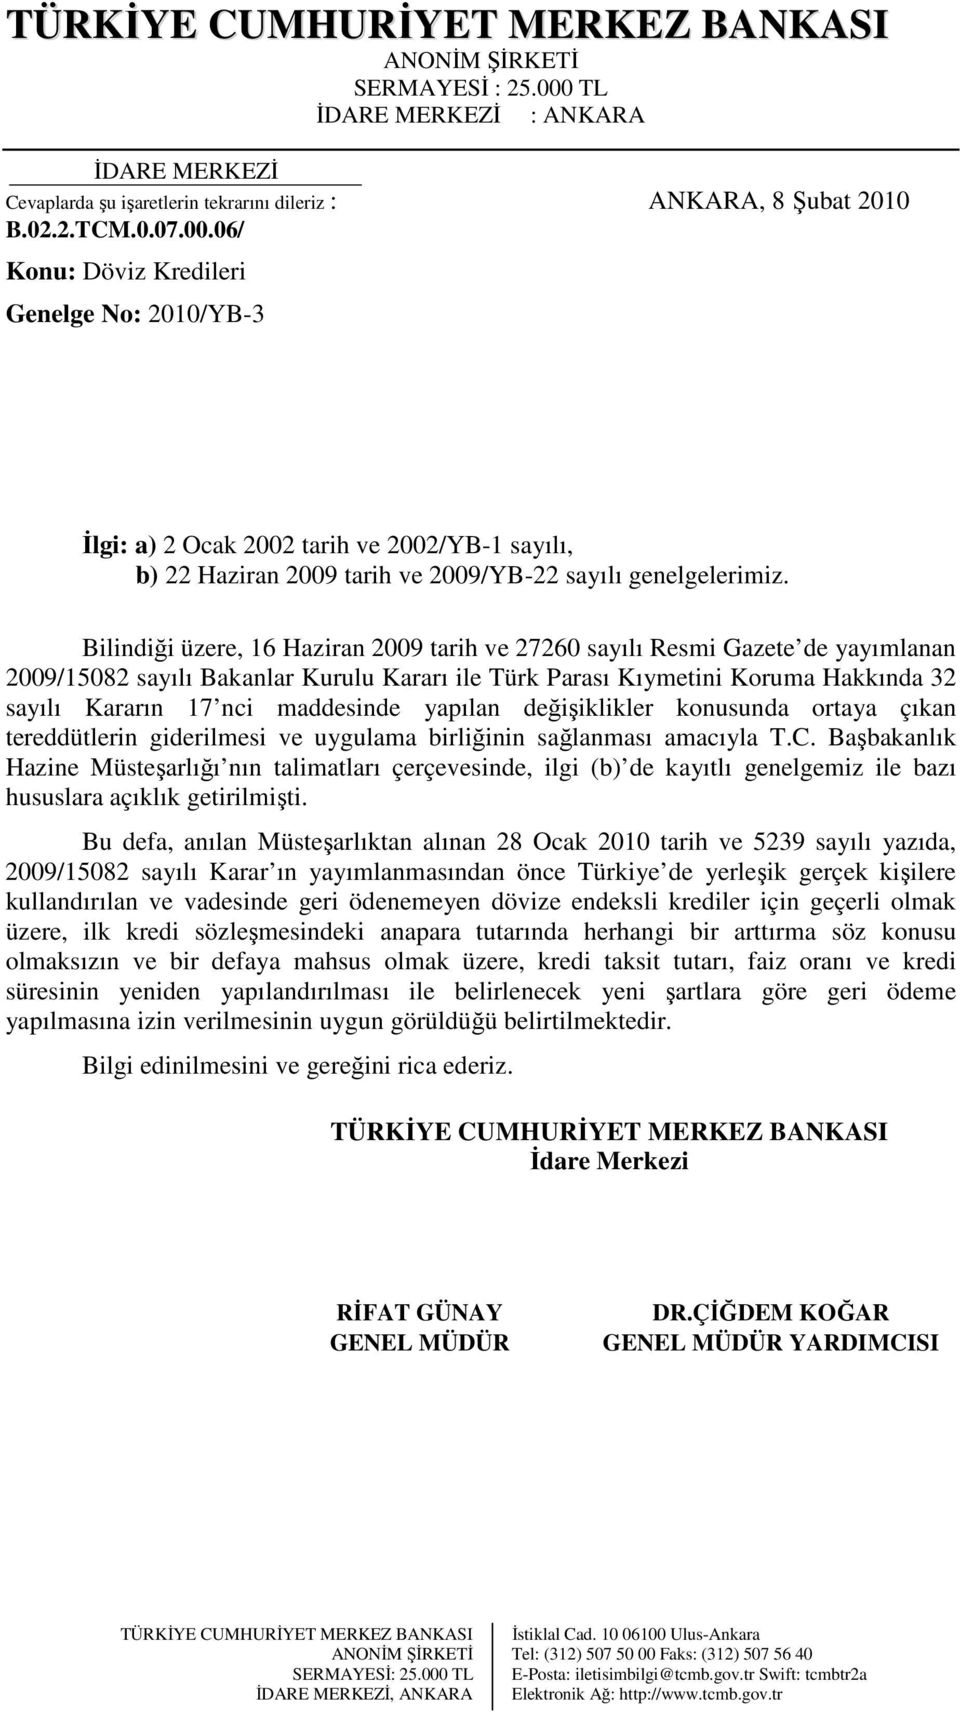 Bilindiği üzere, 16 Haziran 2009 tarih ve 27260 sayılı Resmi Gazete de yayımlanan 2009/15082 sayılı Bakanlar Kurulu Kararı ile Türk Parası Kıymetini Koruma Hakkında 32 sayılı Kararın 17 nci